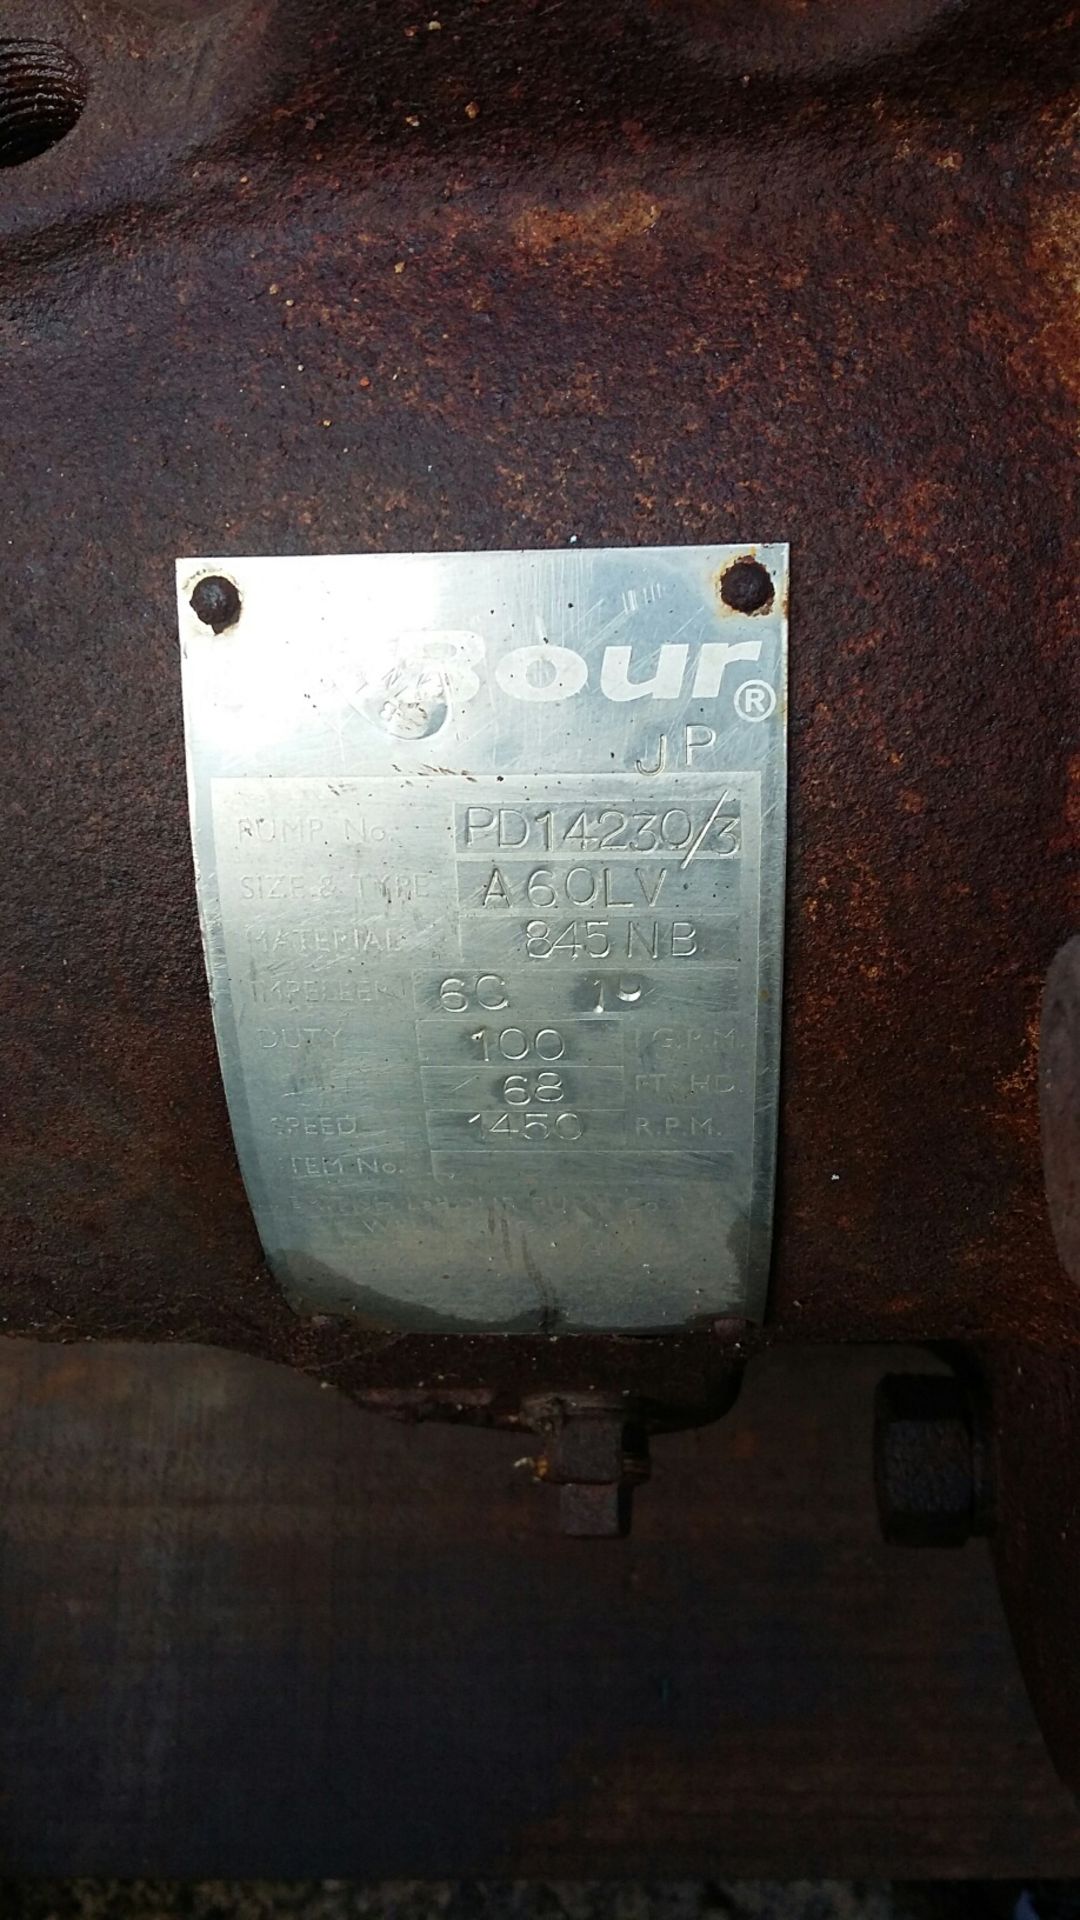 Labour A60LV Stainless Steel Bareshaft Pump - Bild 4 aus 4